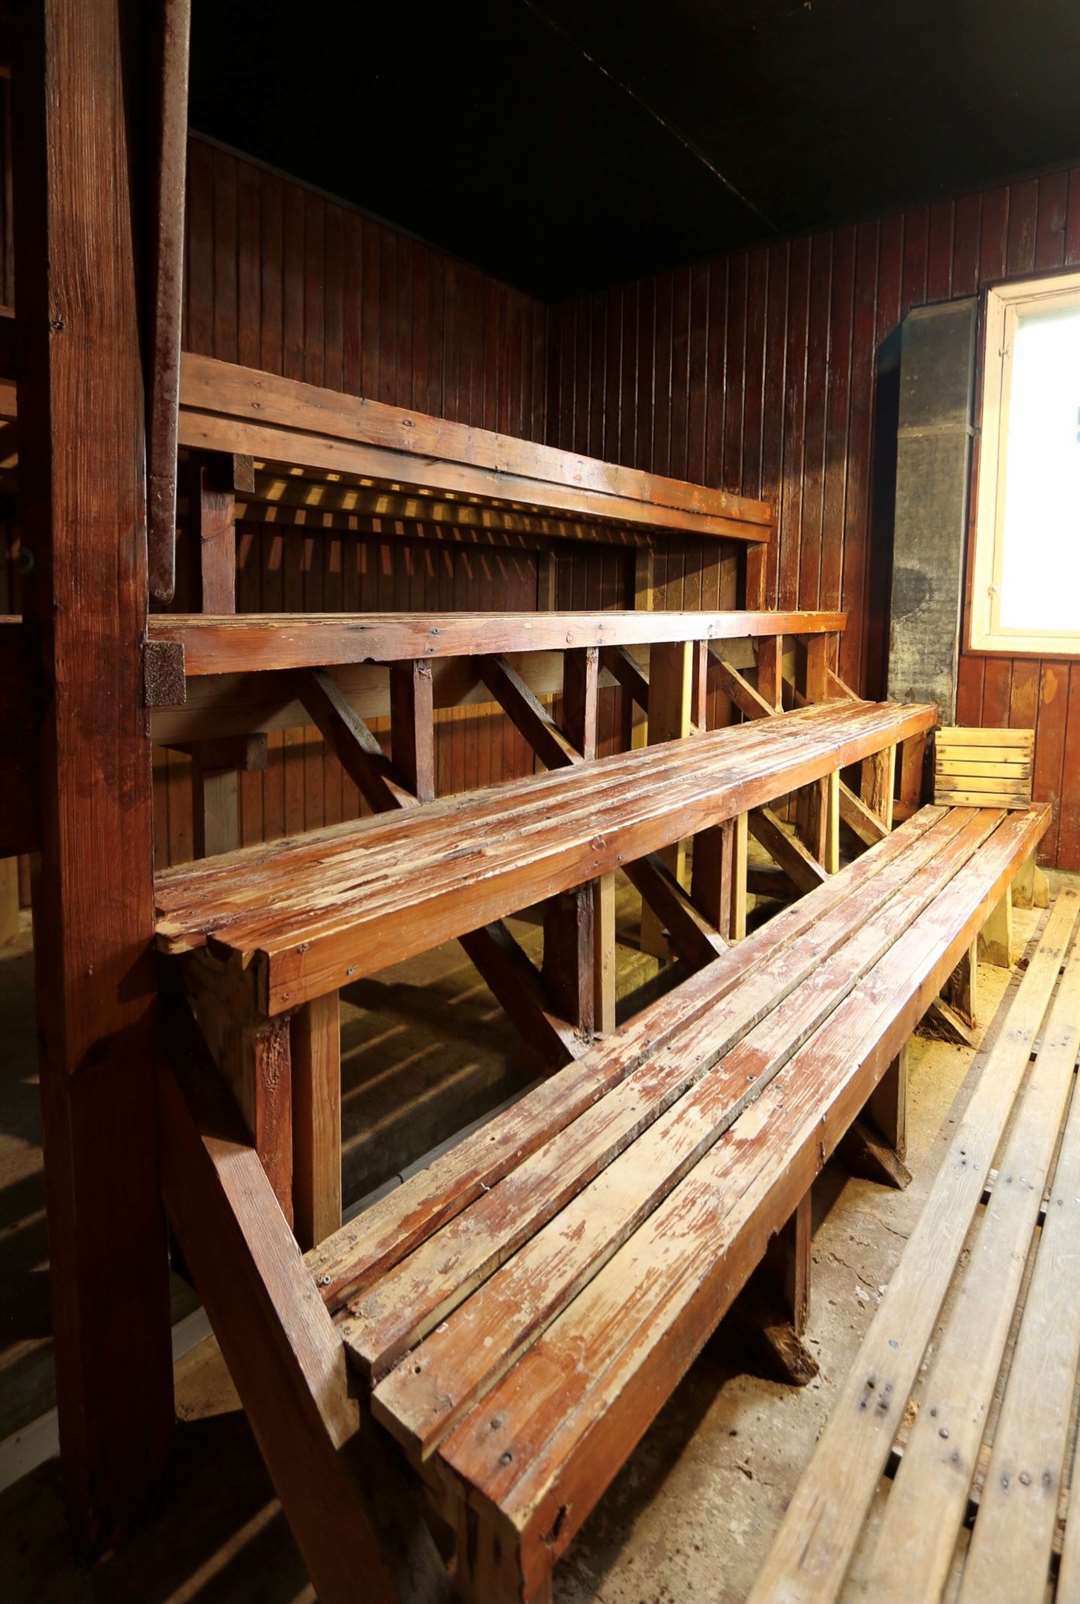 The sauna cabin. Picture: British Sauna Society